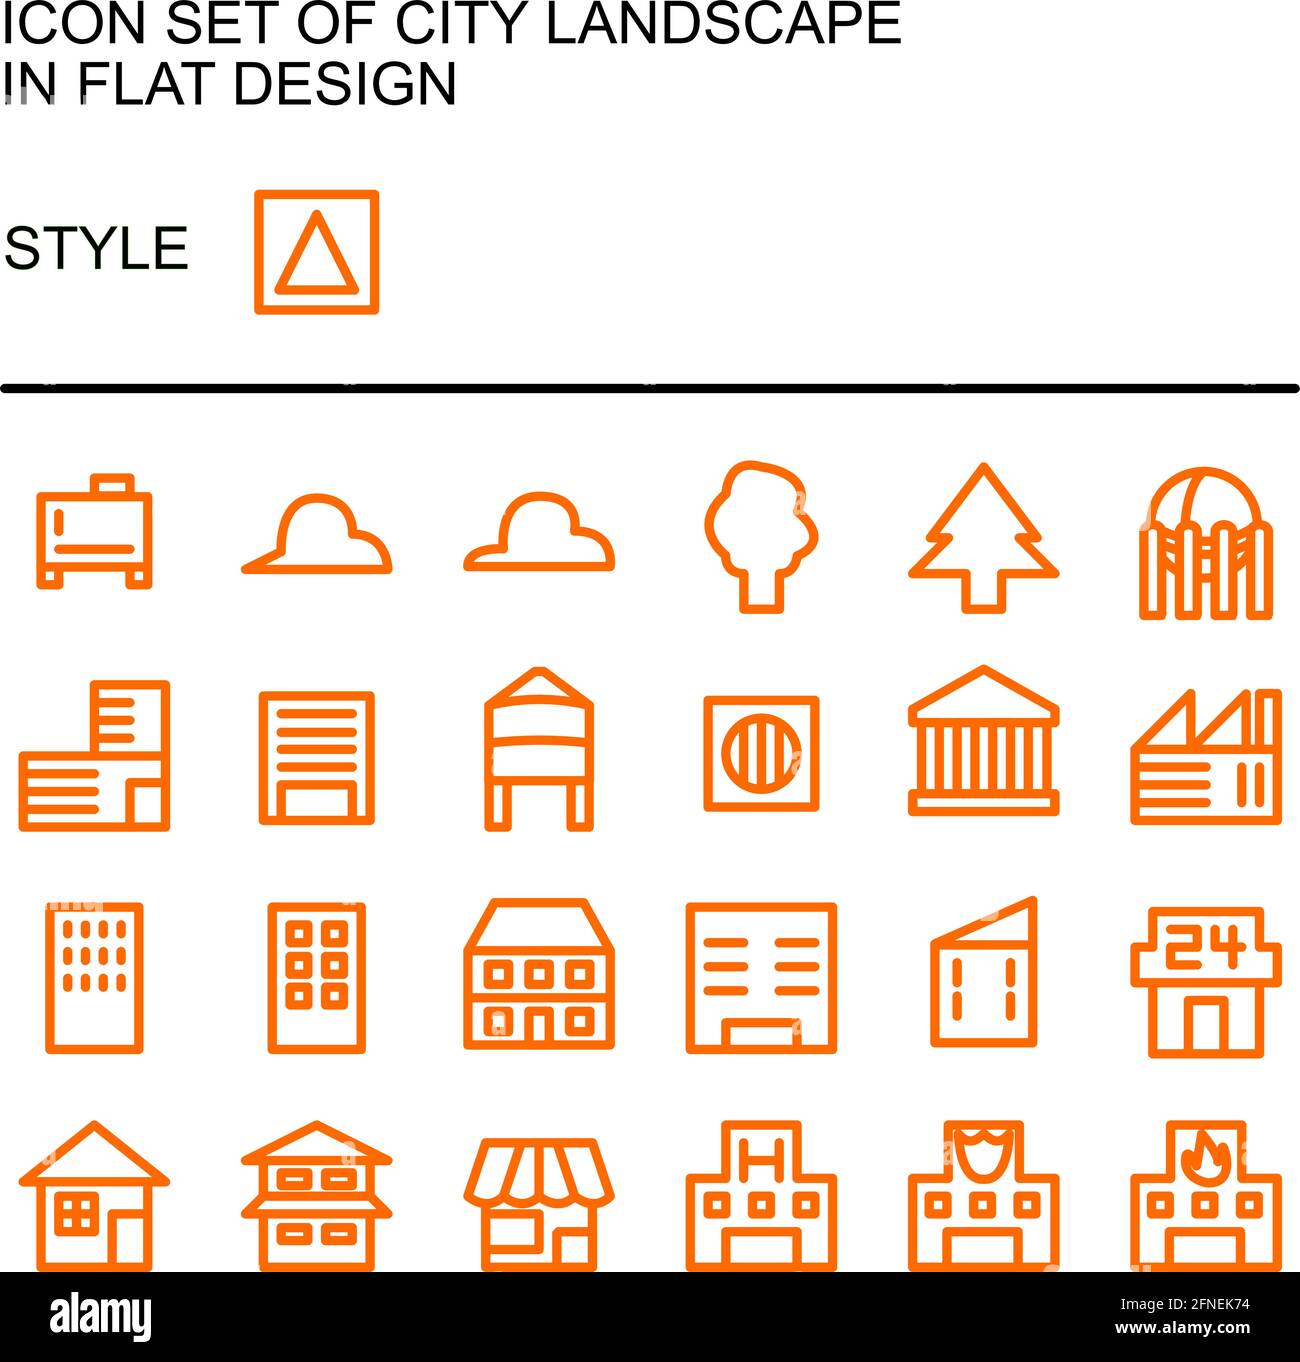 Icône de paysage urbain, conception plate avec lignes orange, remplissage blanc. Illustration de Vecteur